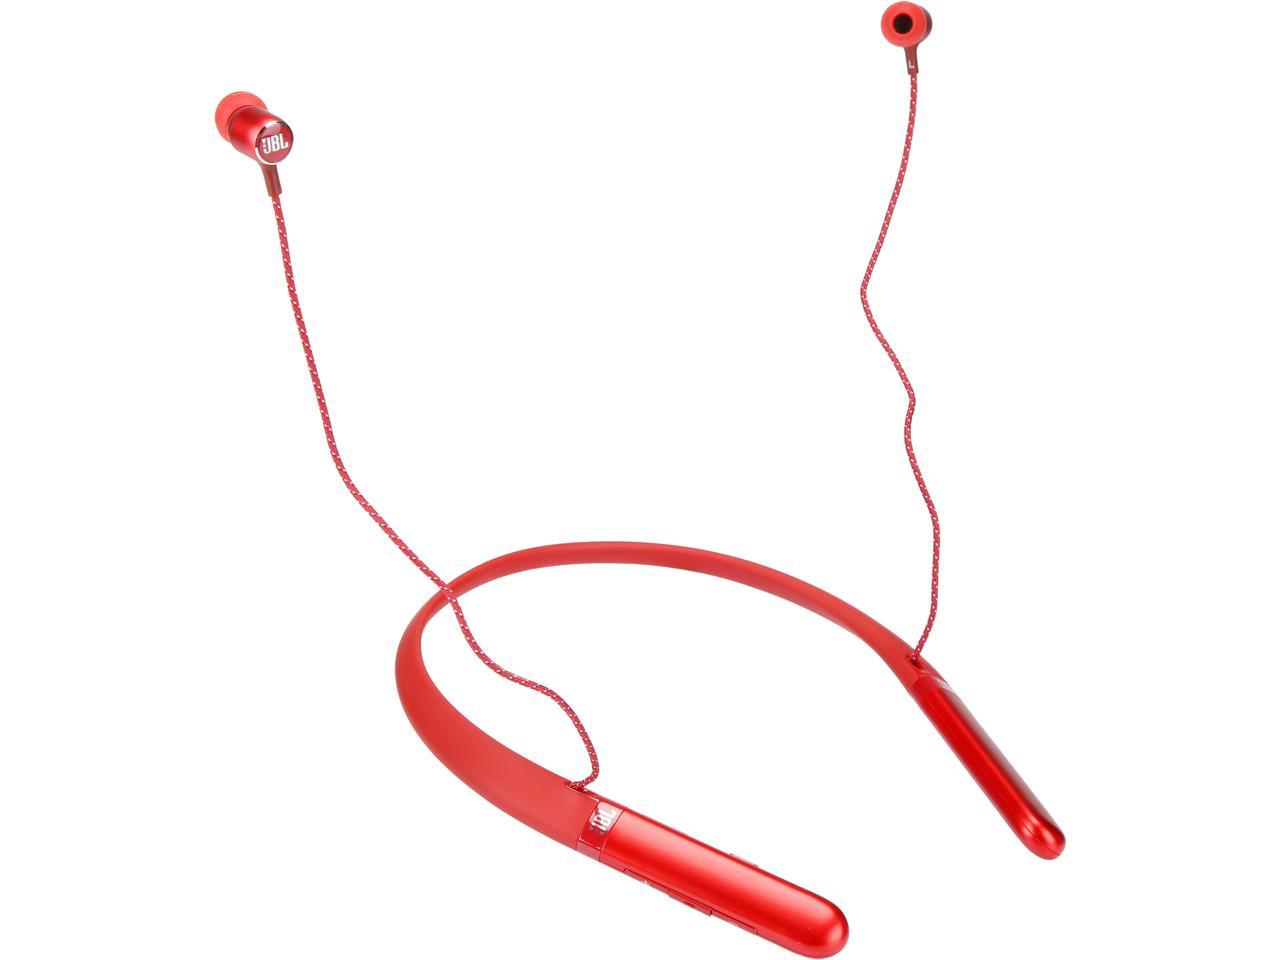 JBL-LIVE200(BT) Wireless In-ear Neckband Headphones